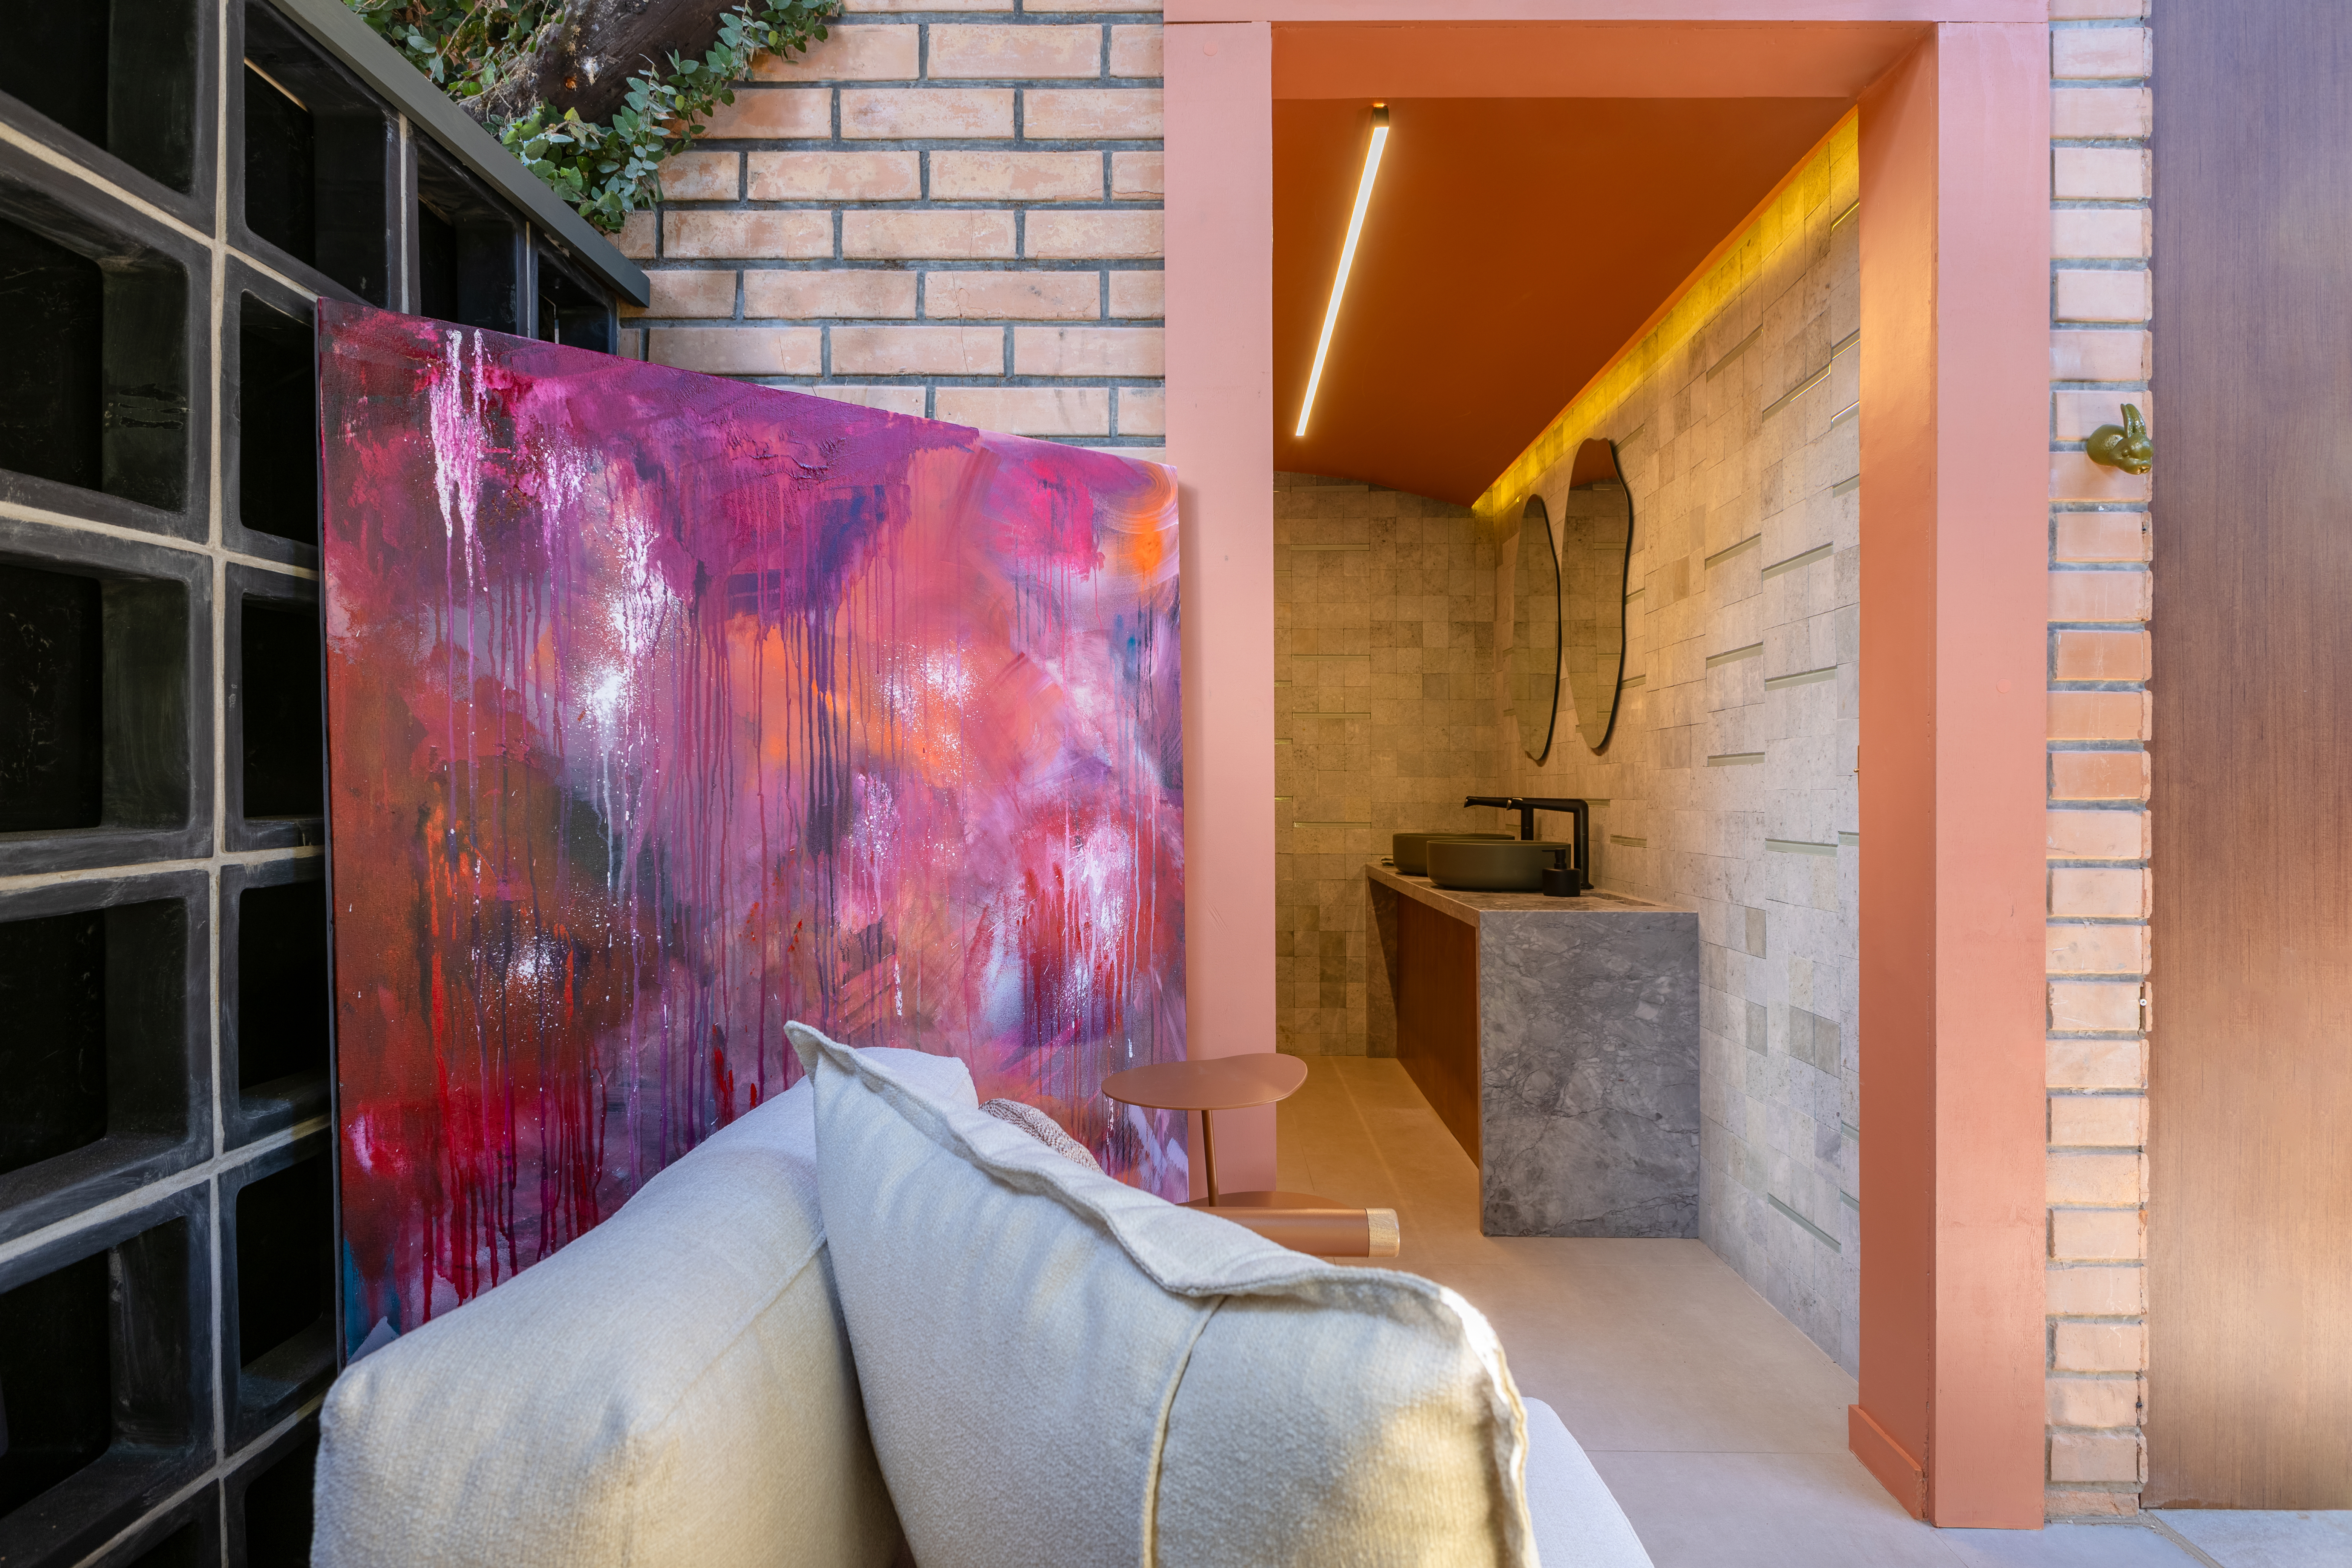 CASACOR Paraná: ambiente brinca com texturas, cores e sensações. Projeto de Fernanda Gonçalves. Na foto, entrada para banheiro com tijolinhos expostos